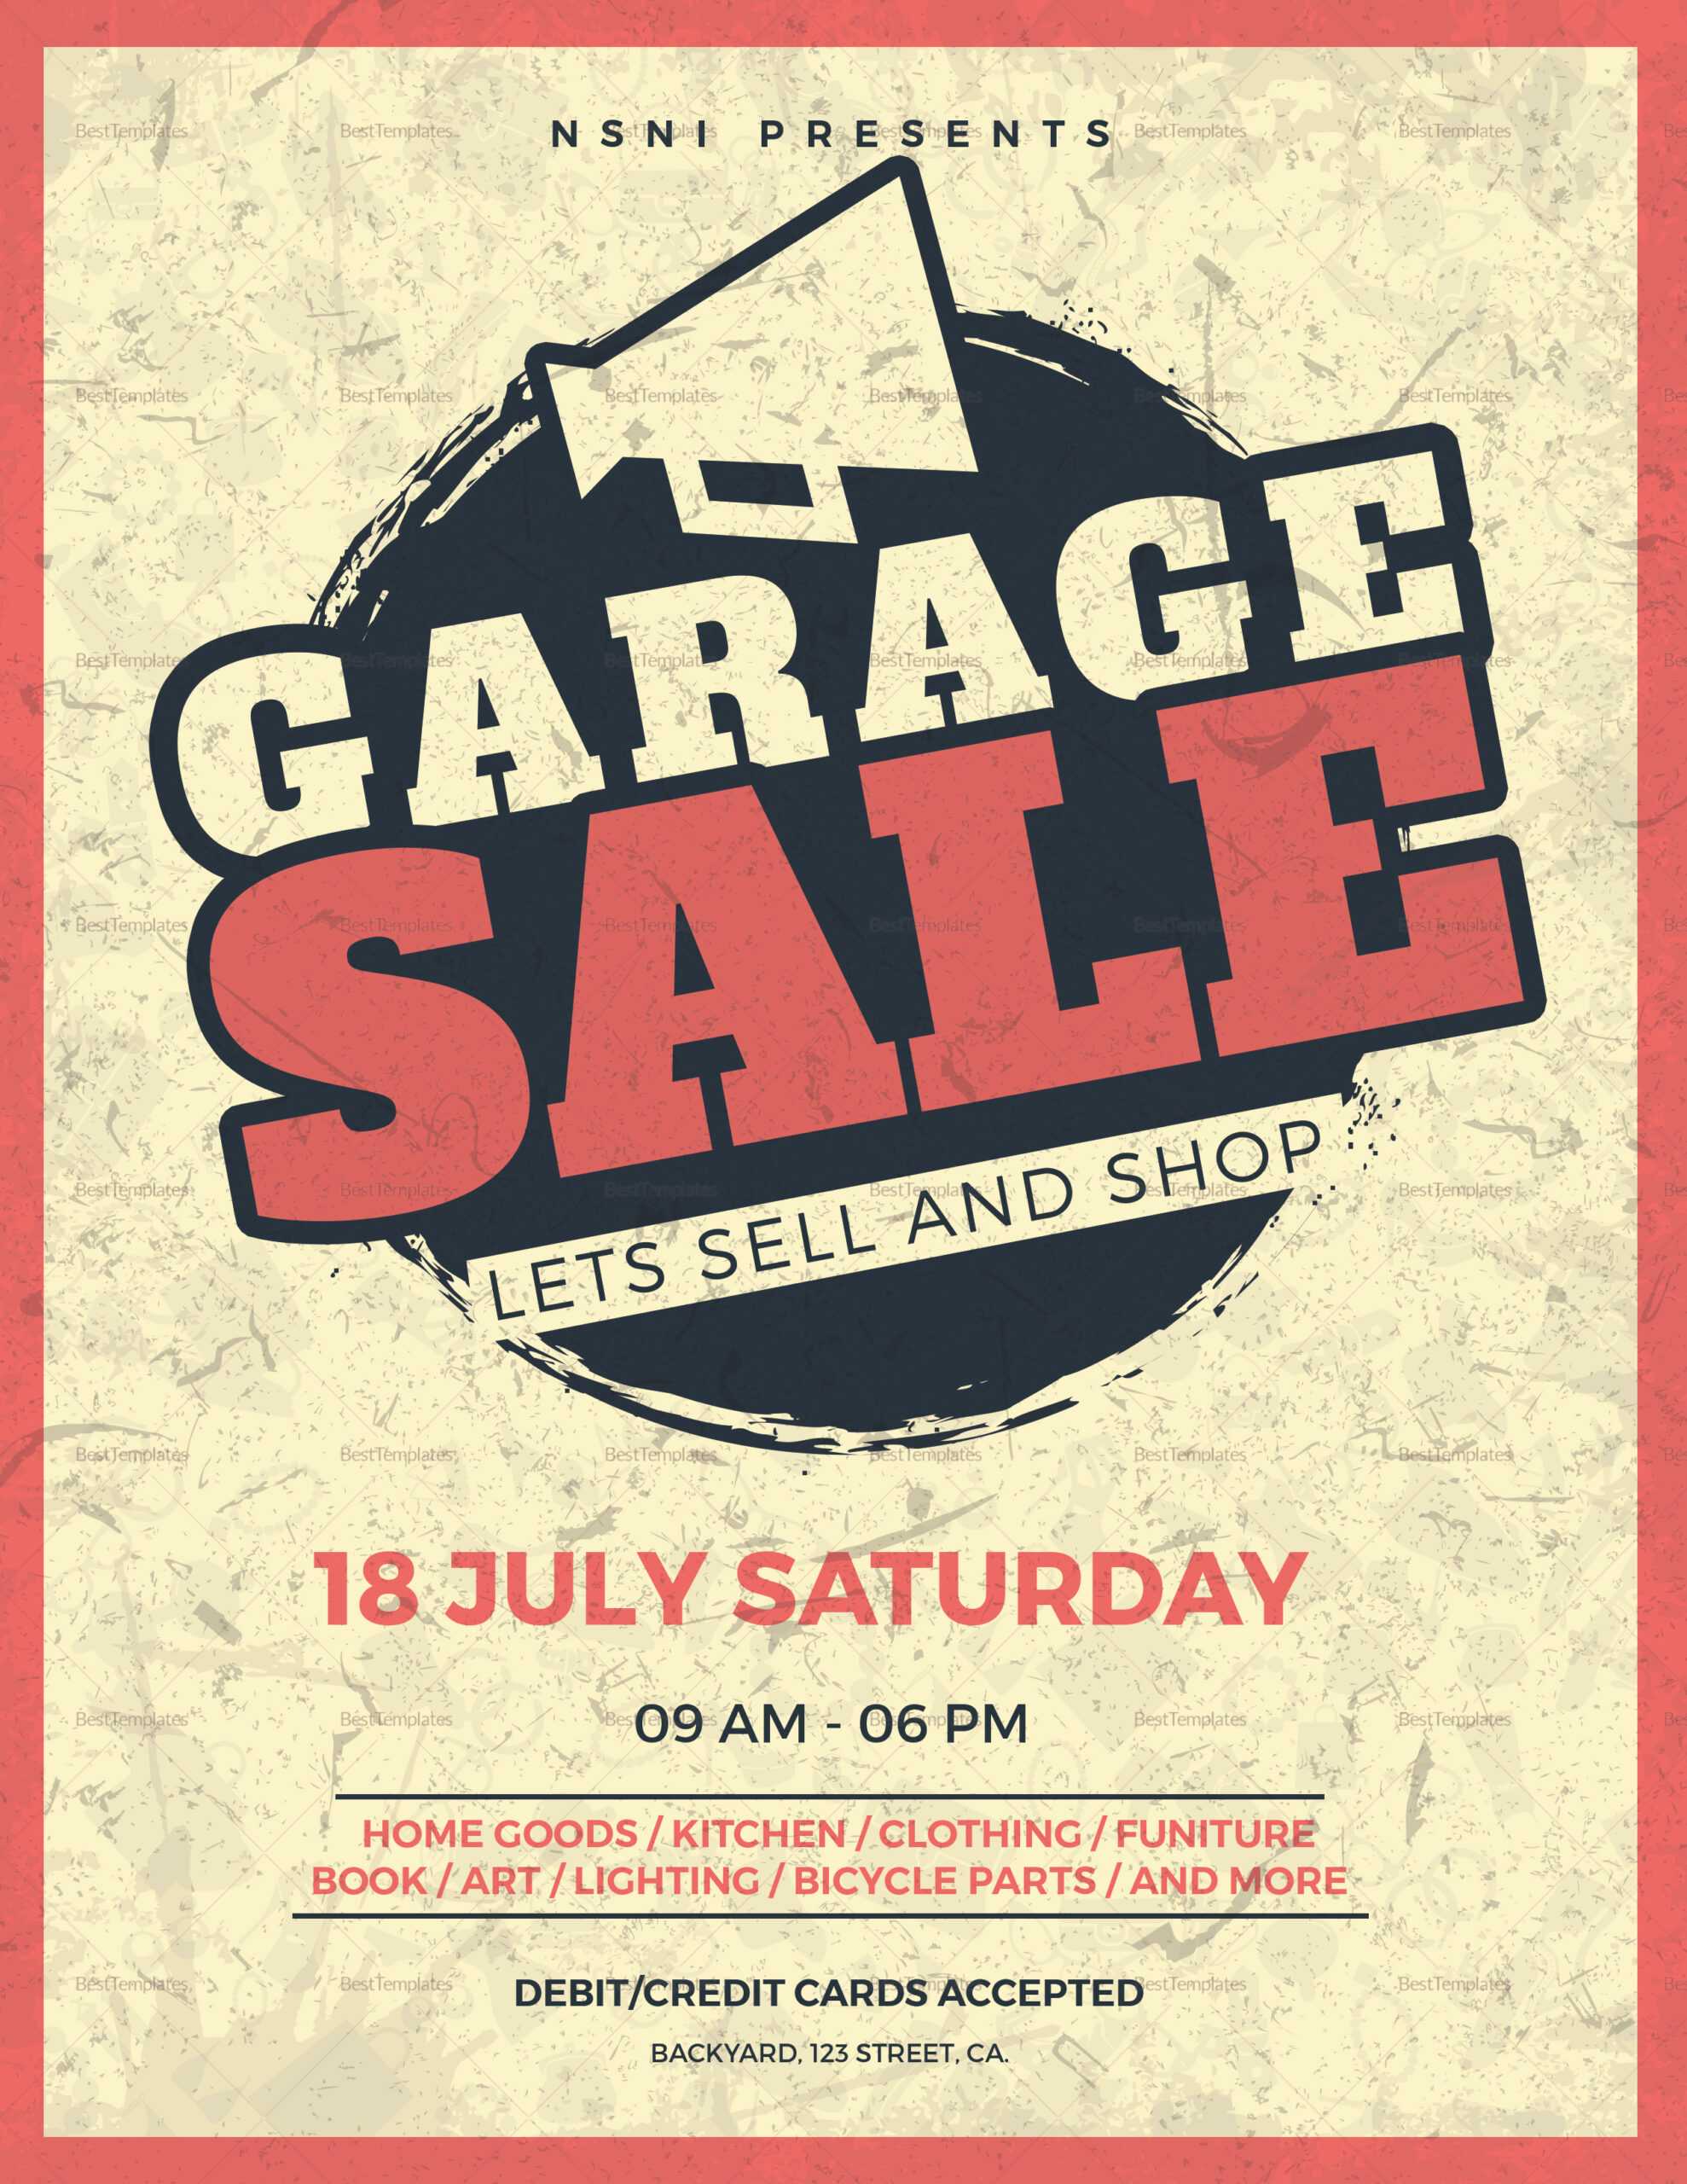 Garage: Garage Sale Flyer With Regard To Garage Sale Flyer Template Word